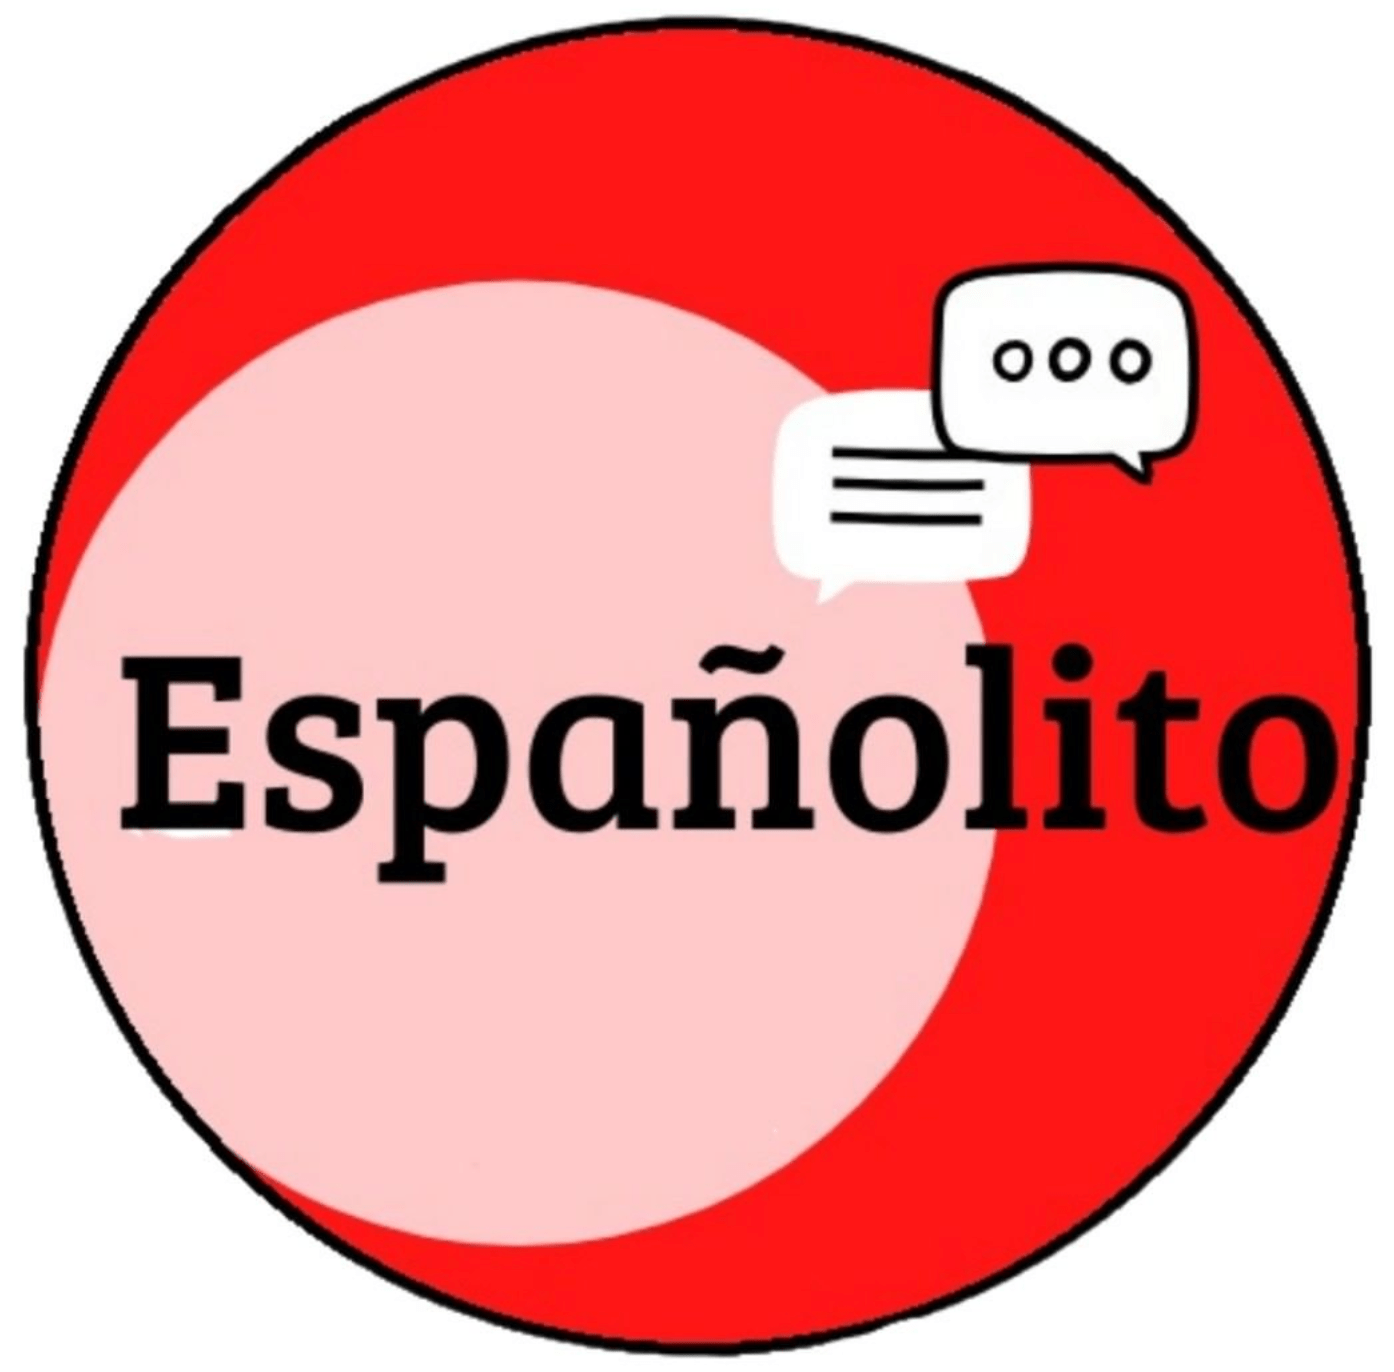 Españolito